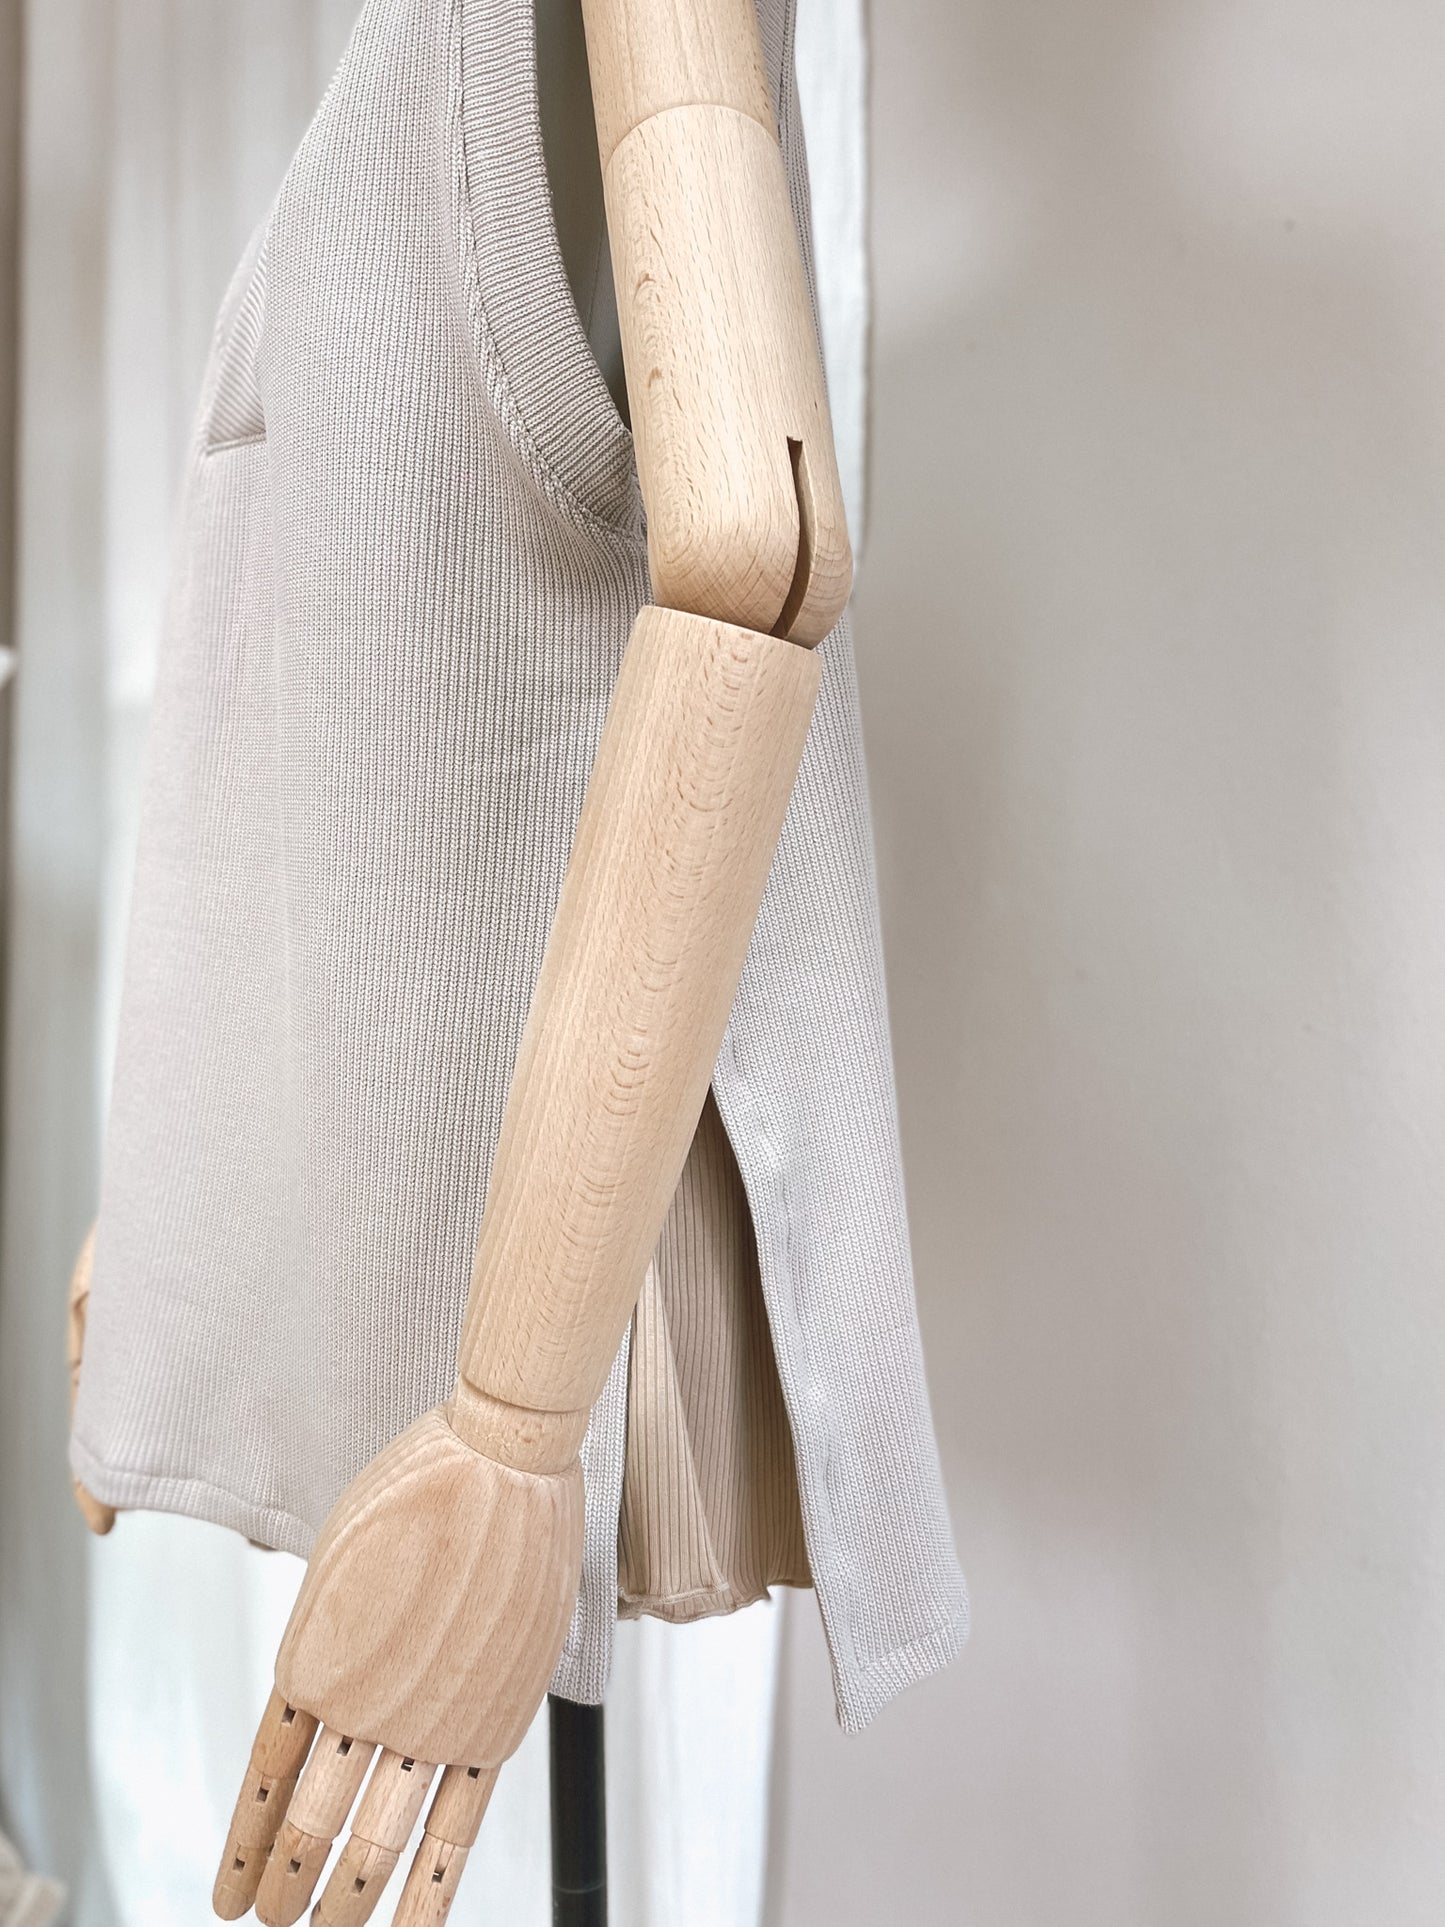 Oversized vest - cotton knit - creamy grey